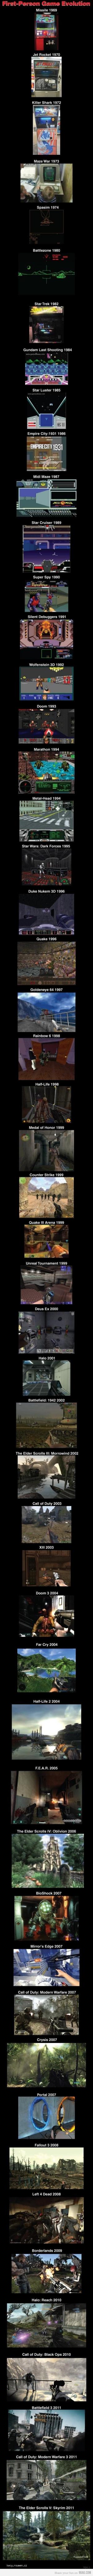 games  evolution